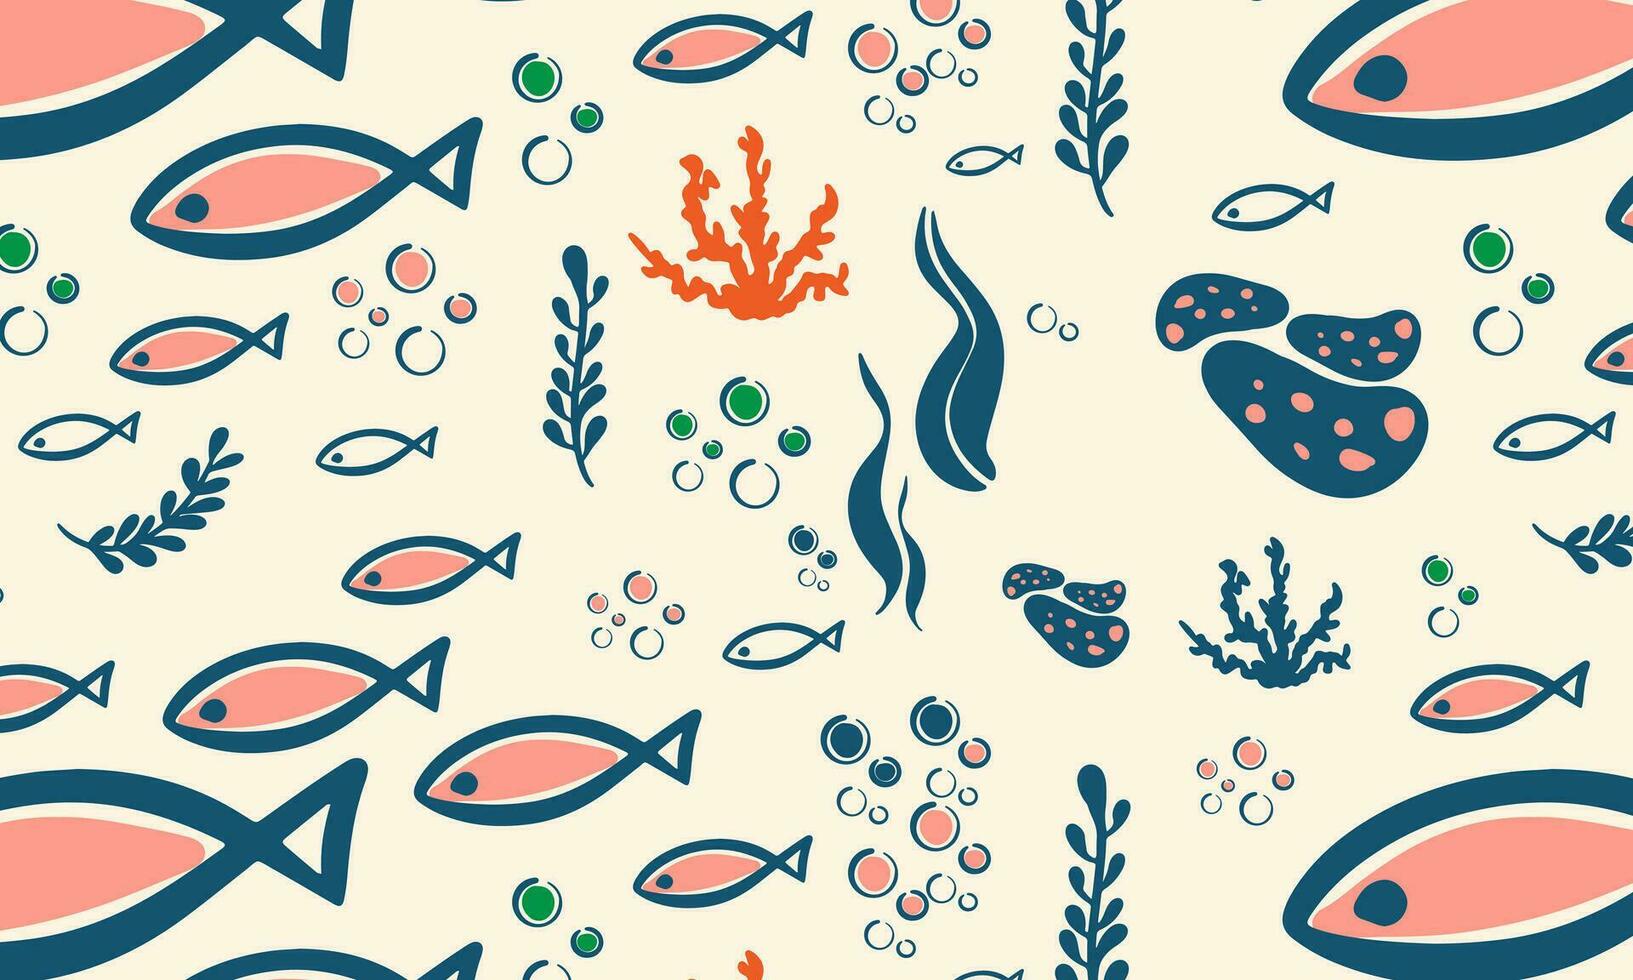 marin element av de under vattnet värld, skal, koraller, fisk, alger, bubblor, vektor illustration i platt stil, minimalism